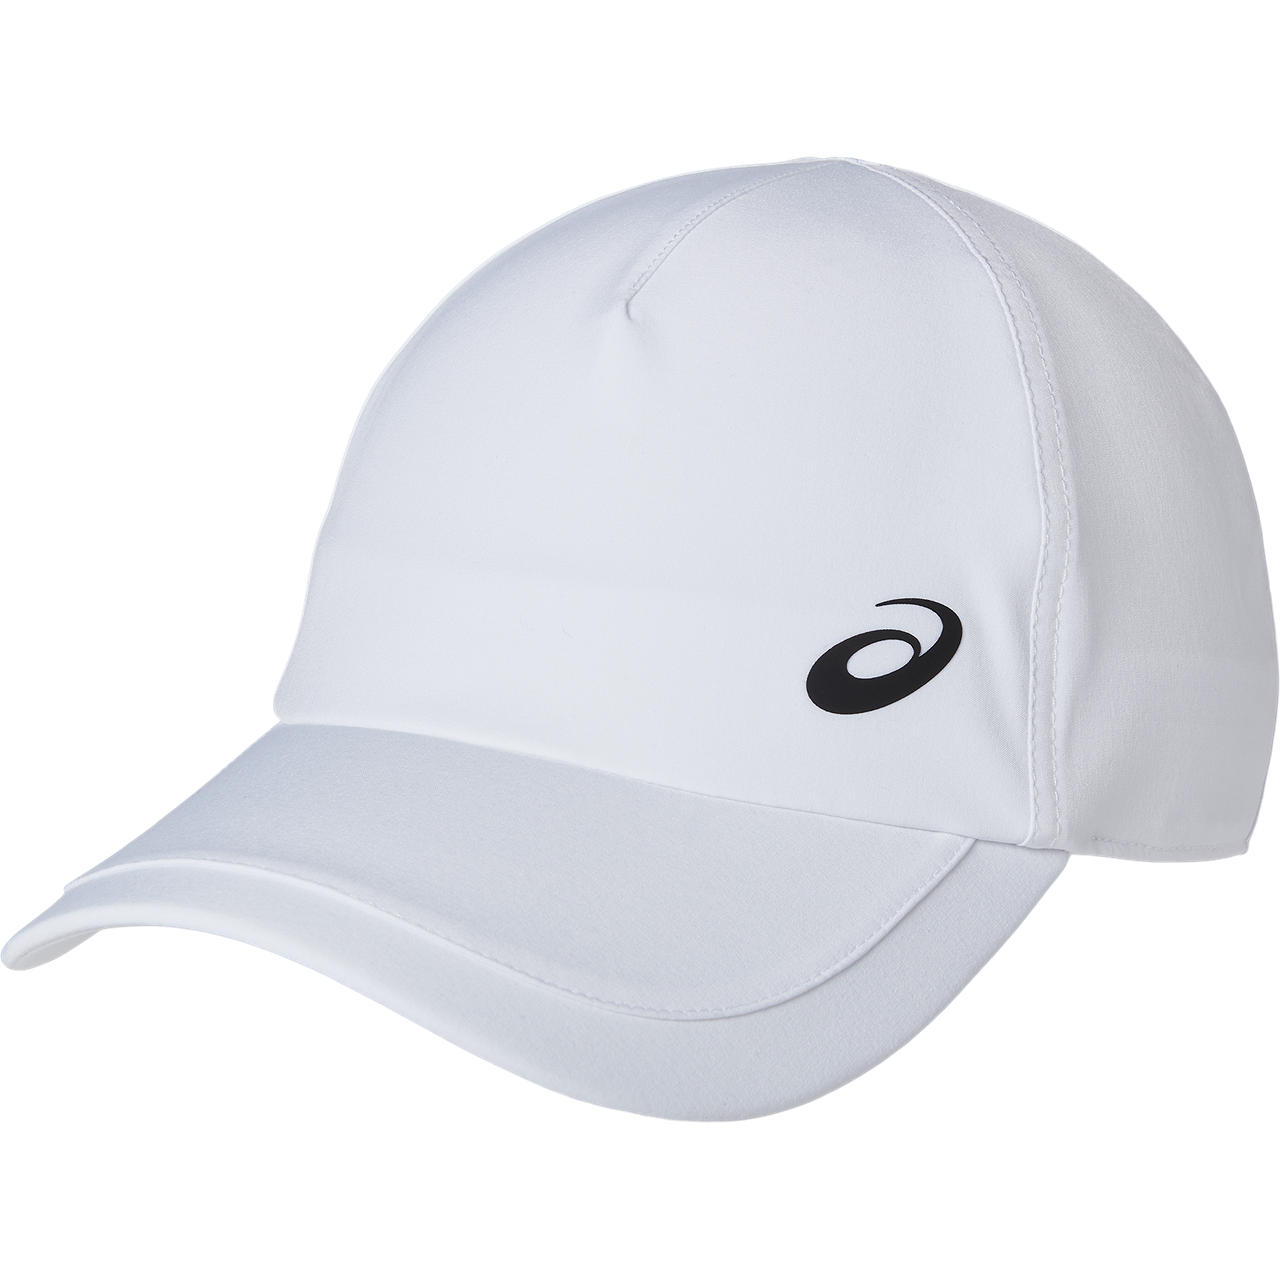 ASICS PF CAP, BRILLIANT WHITE, swatch